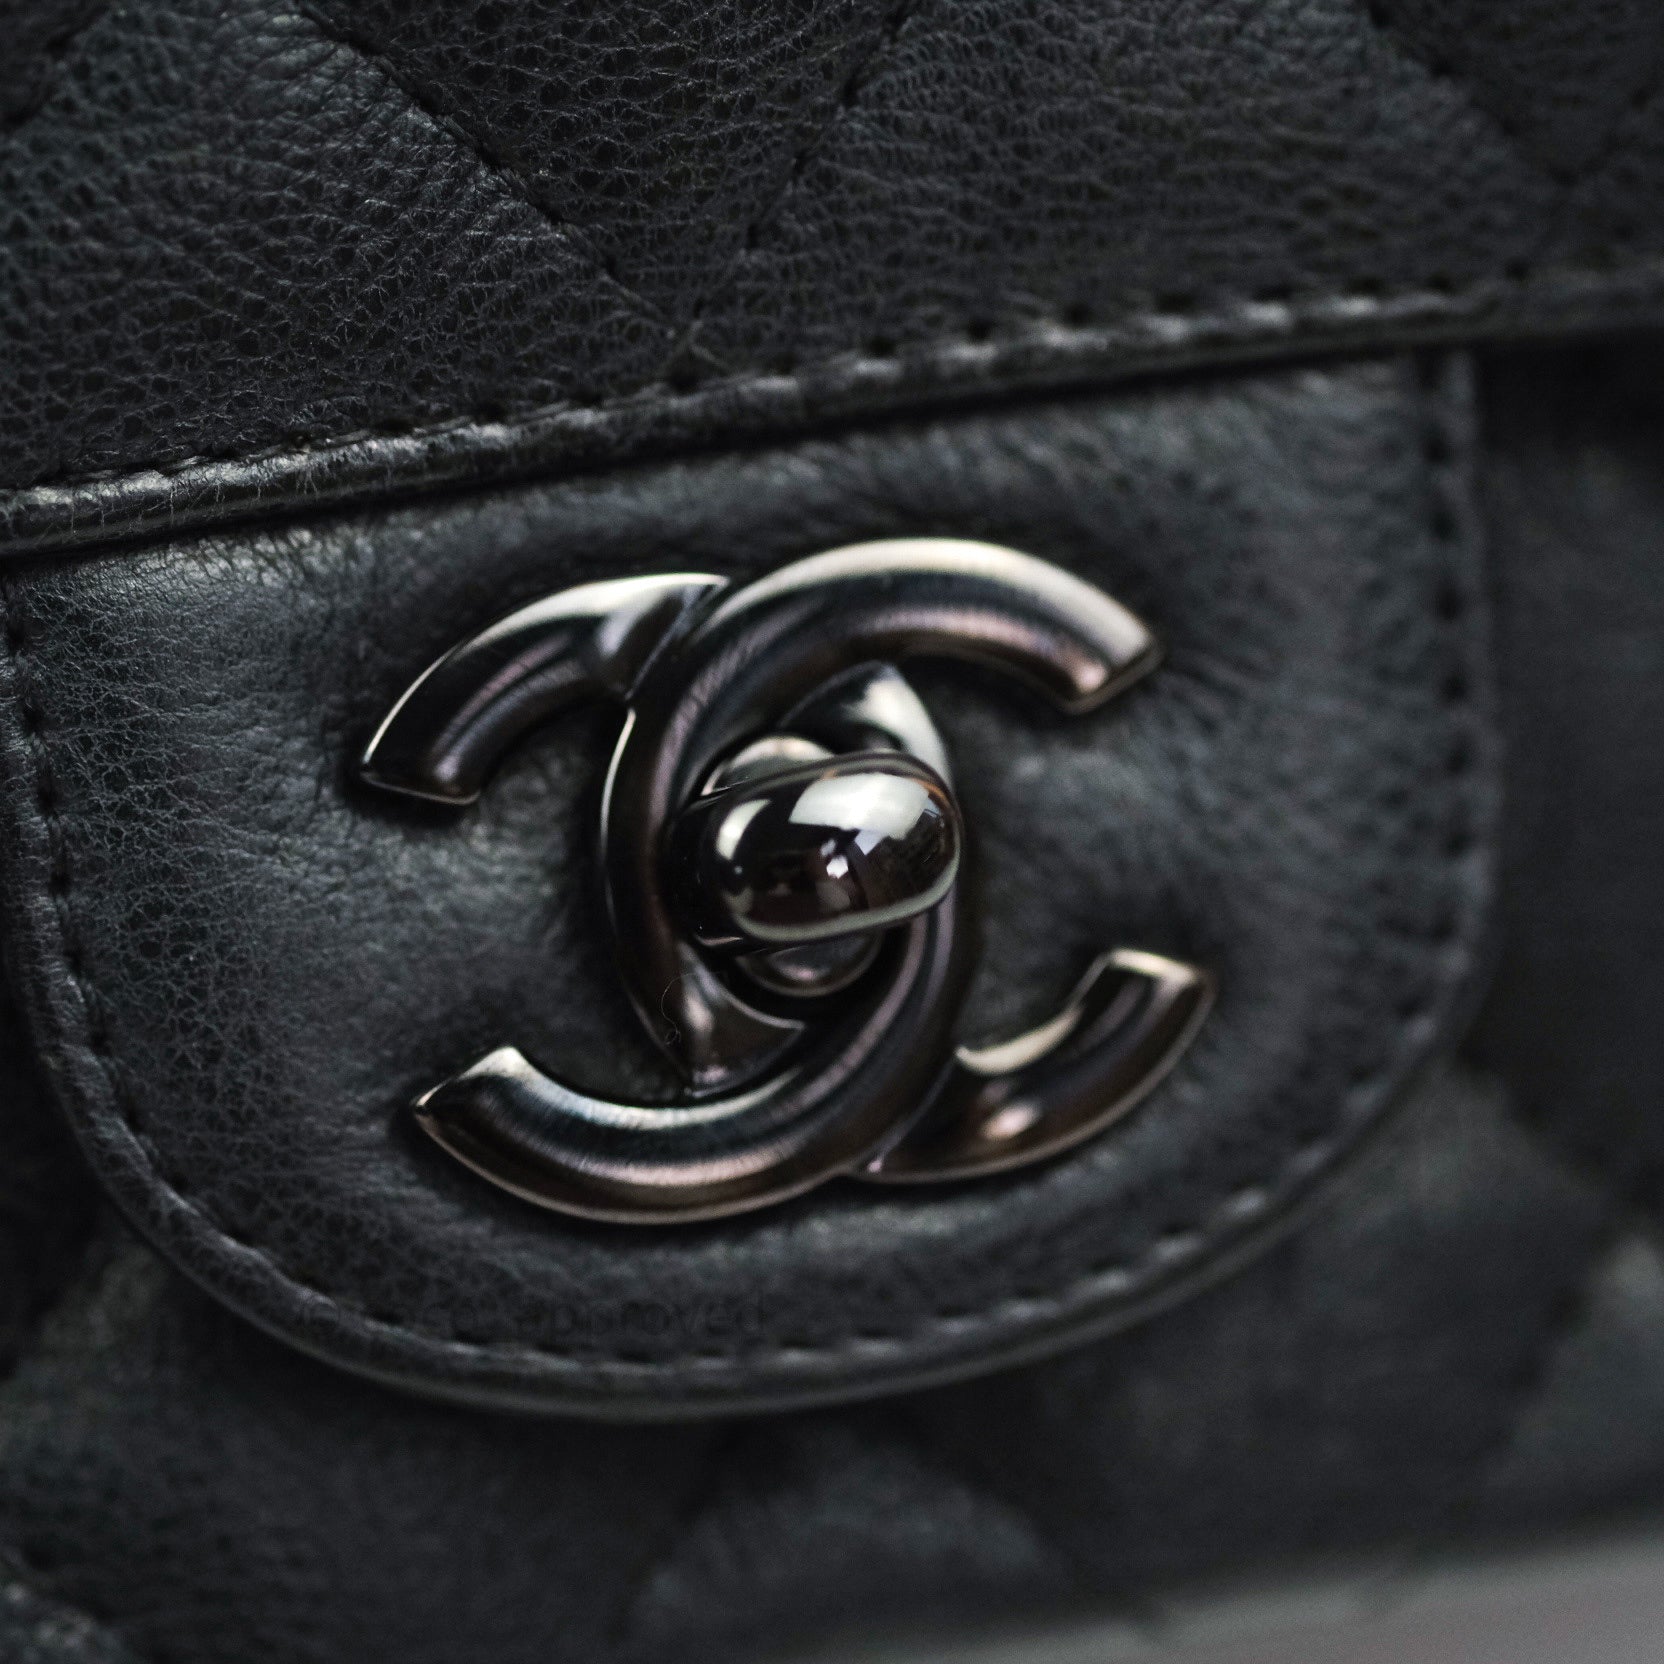 Chanel 'So Black' Messenger Bag in Smooth Black Calfskin - SOLD